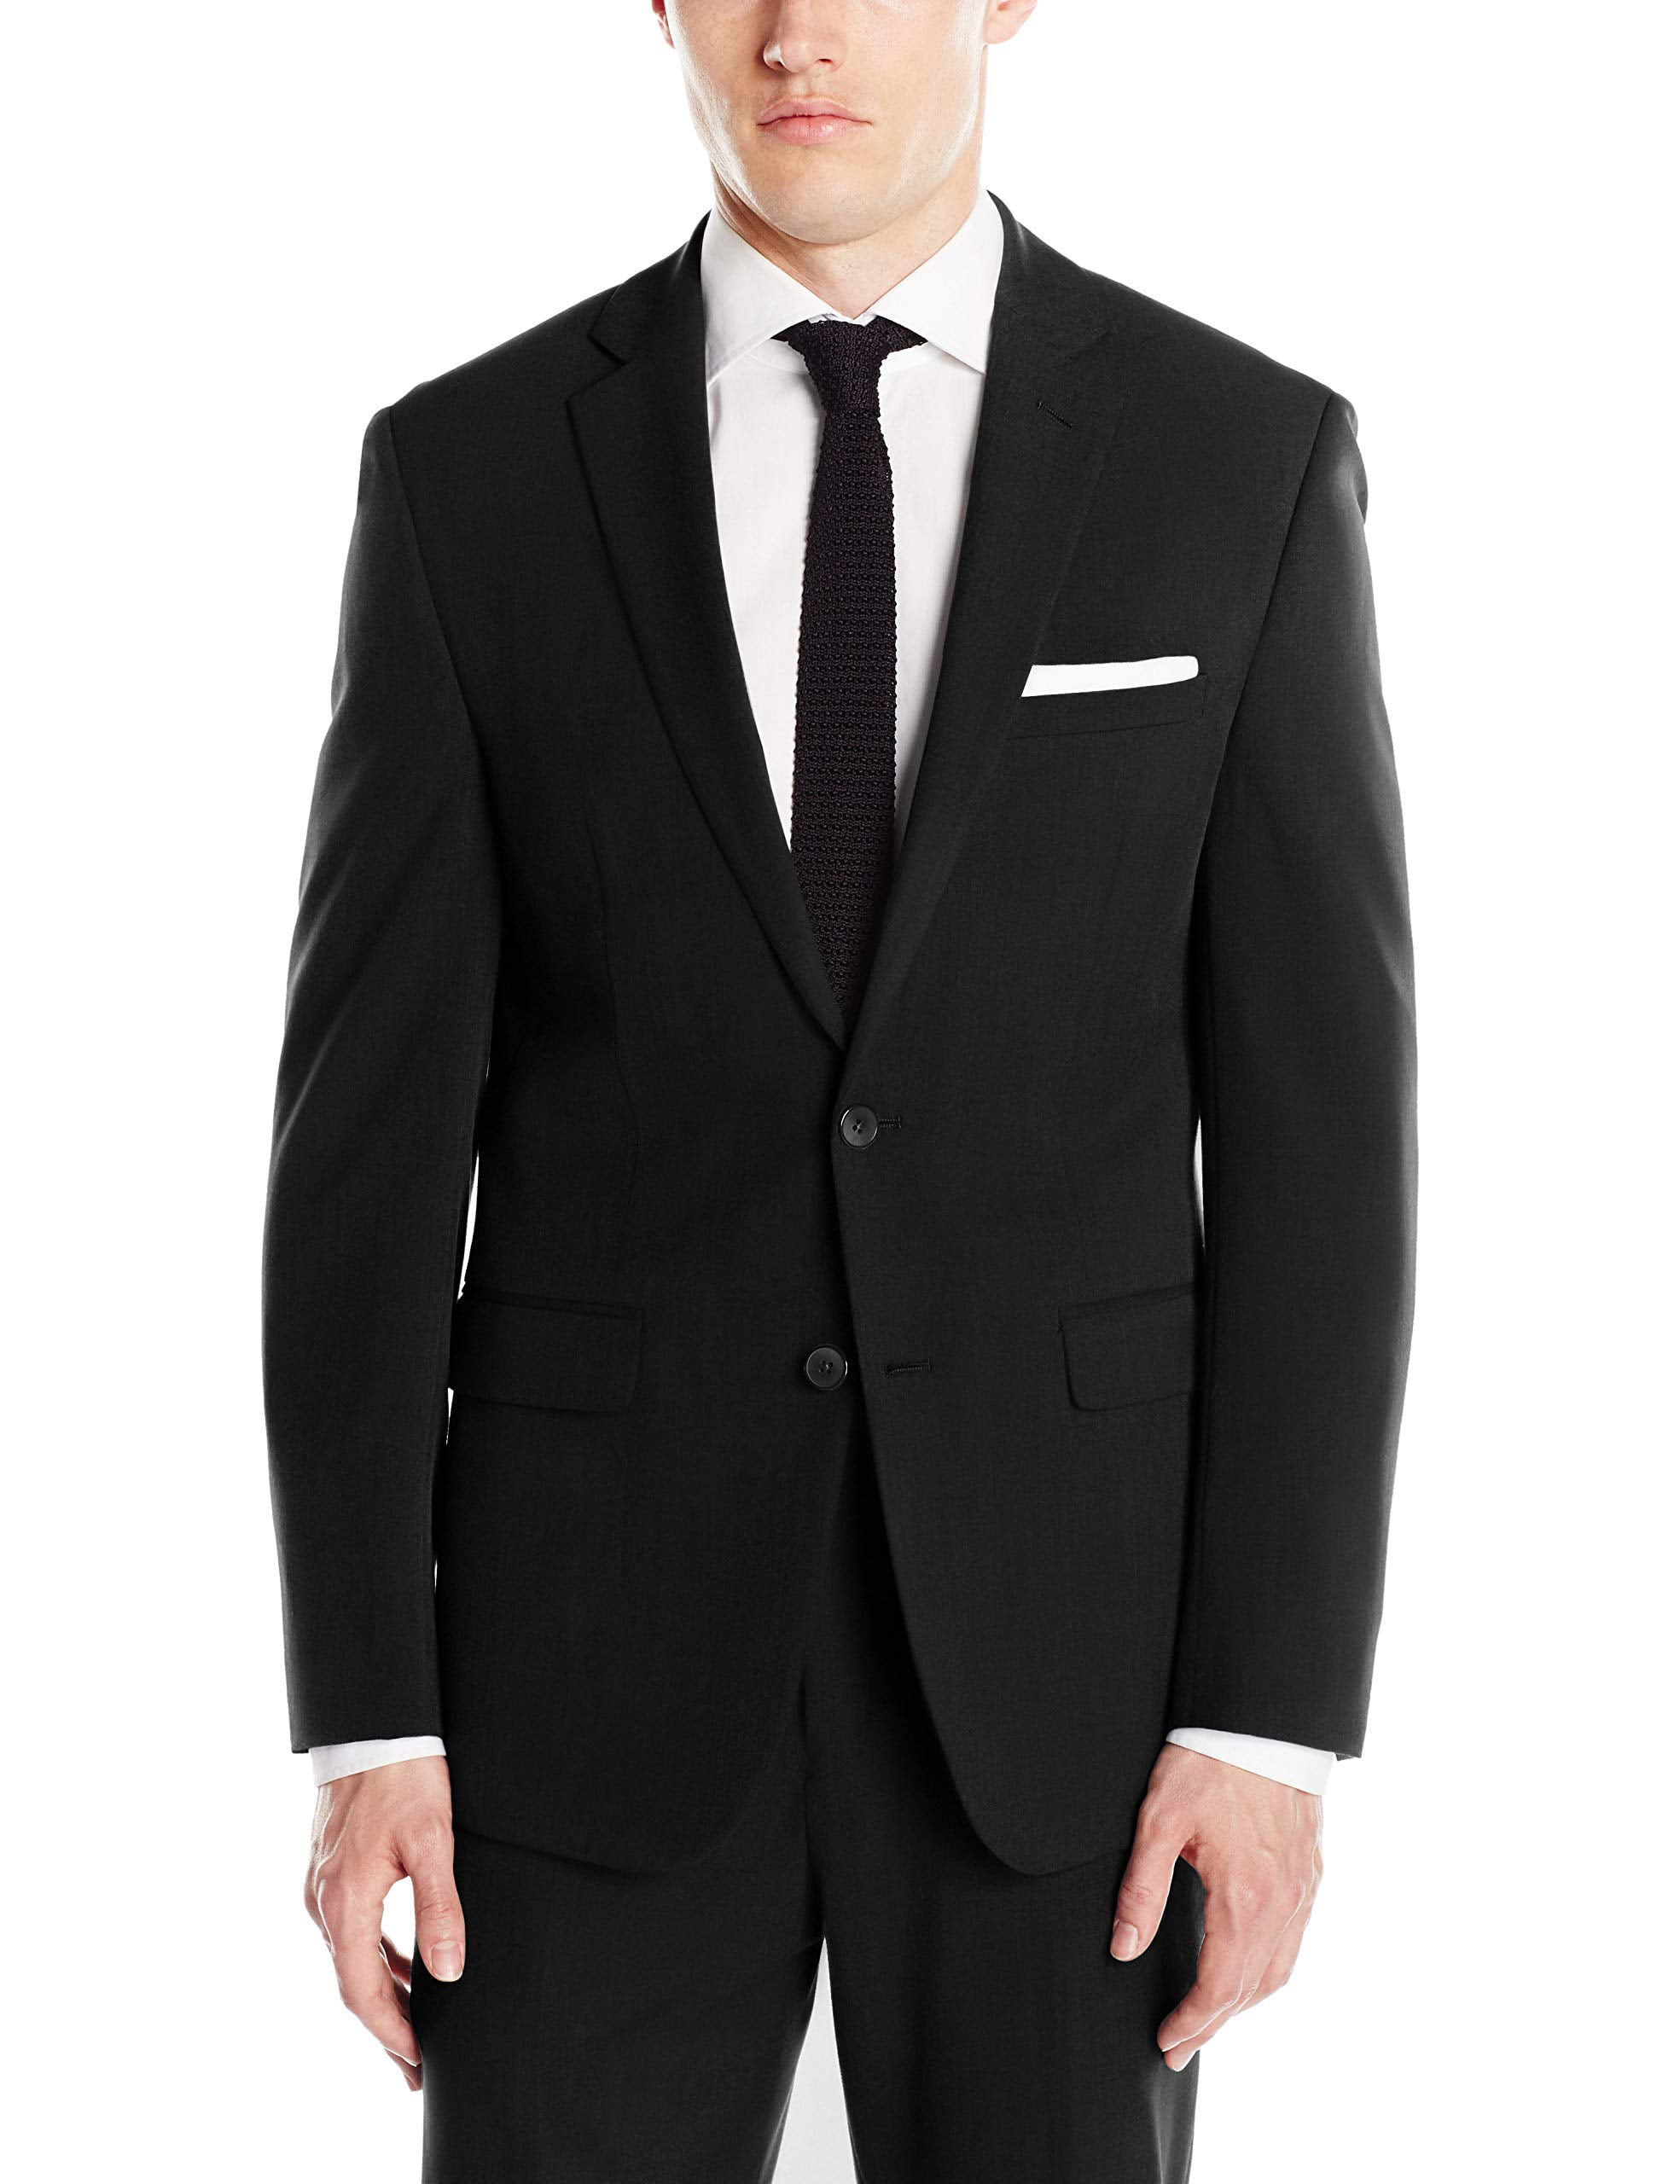 Van Heusen Suits & Suit Separates - Mens Suit Jacket Slim Fit Stretch